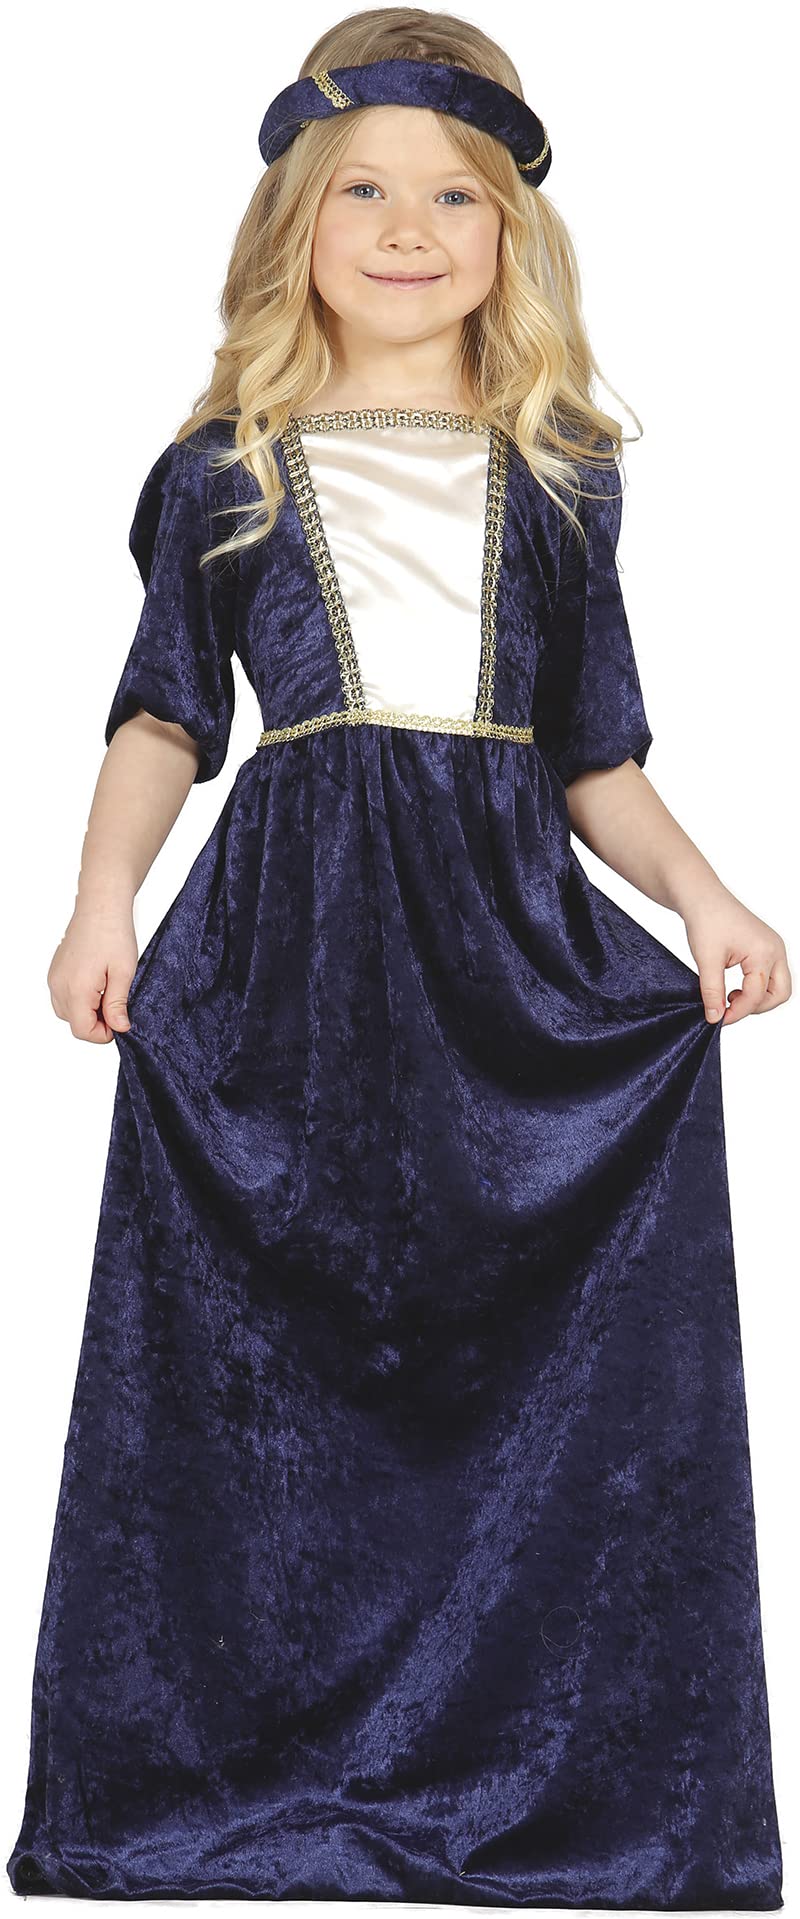 GUIRCA – Kostüm Dame mittelalterlichen, Gr. 7 – 9 Jahre (85598.0)